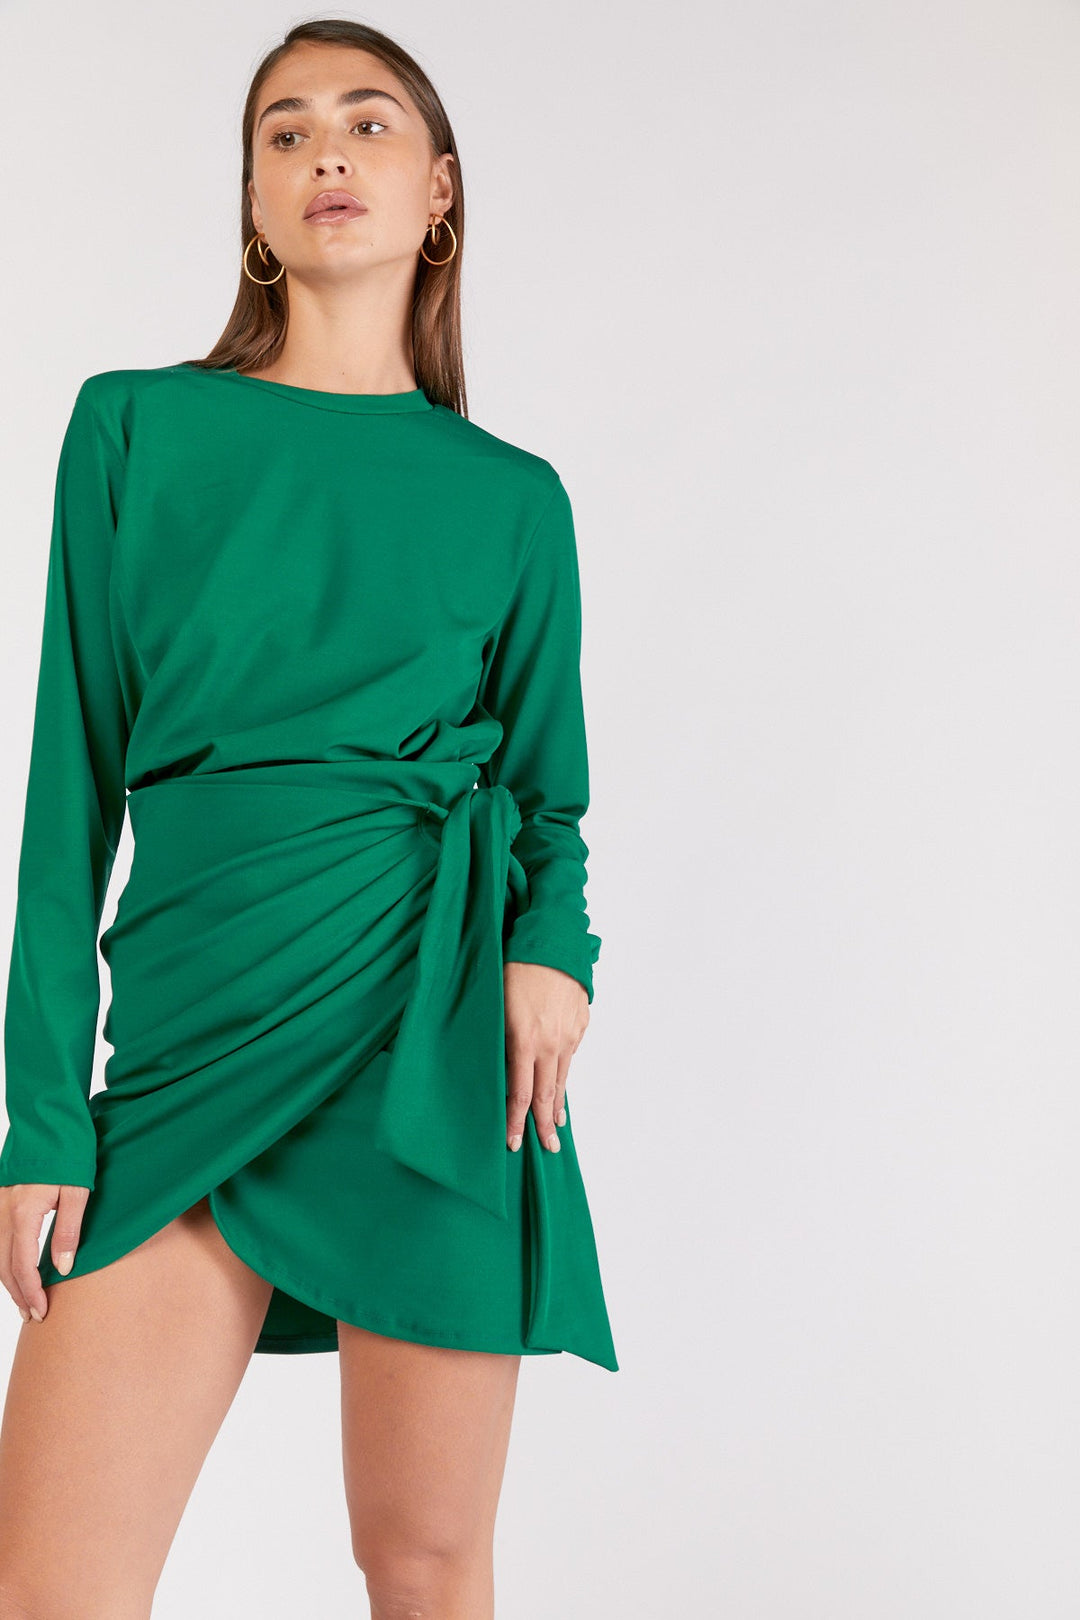 חצאית אלבינה בצבע ירוק - Dana Sidi